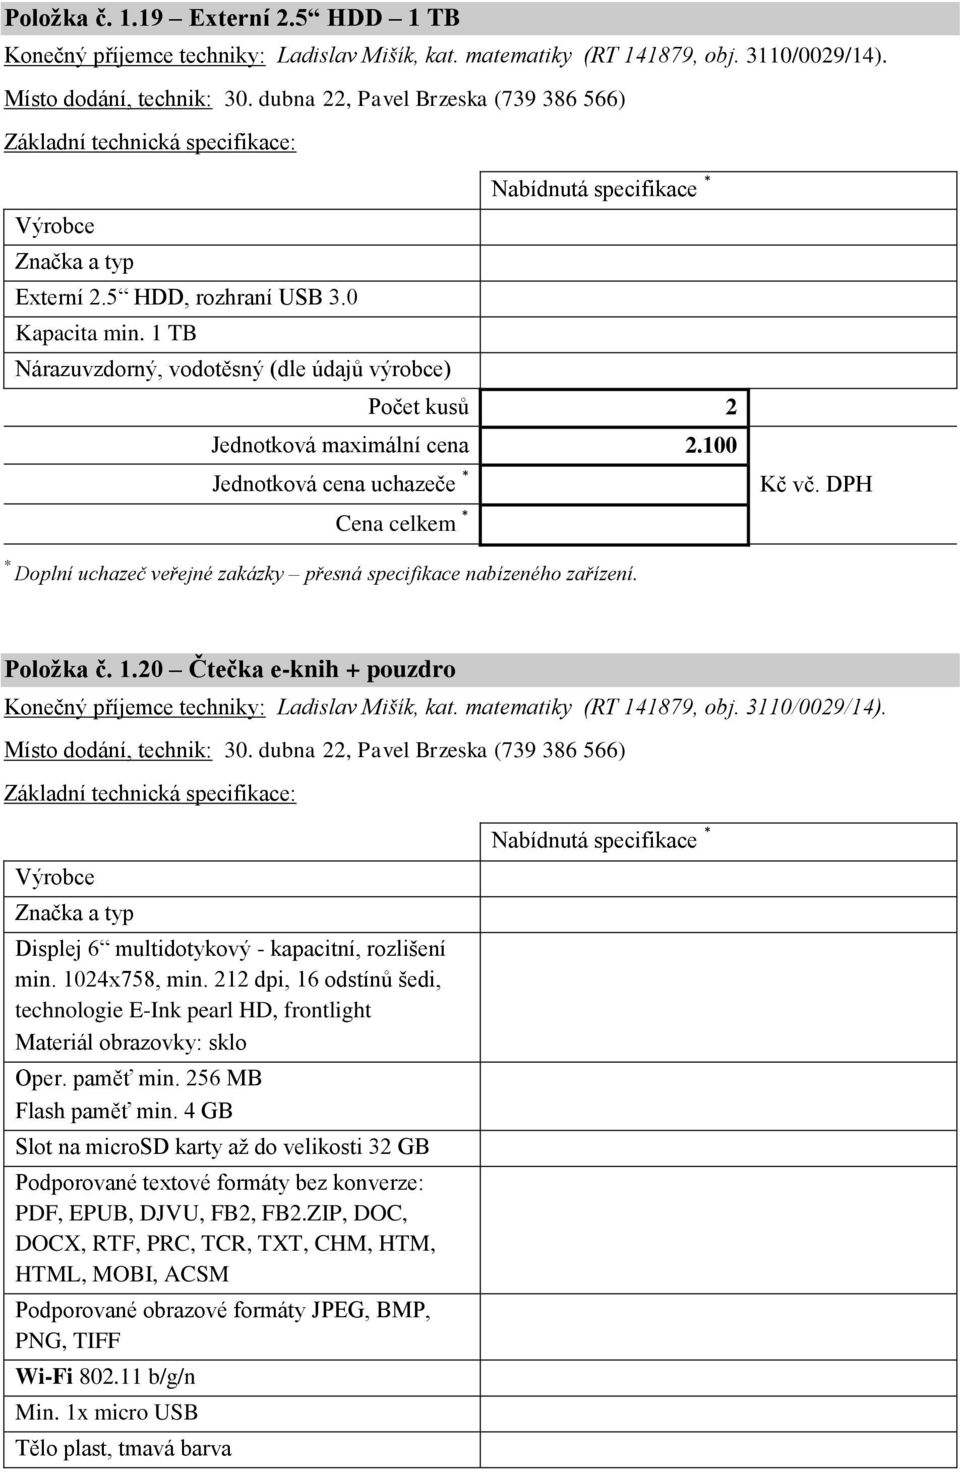 100 Položka č. 1.20 Čtečka e-knih + pouzdro Konečný příjemce techniky: Ladislav Mišík, kat. matematiky (RT 141879, obj. 3110/0029/14). Místo dodání, technik: 30.